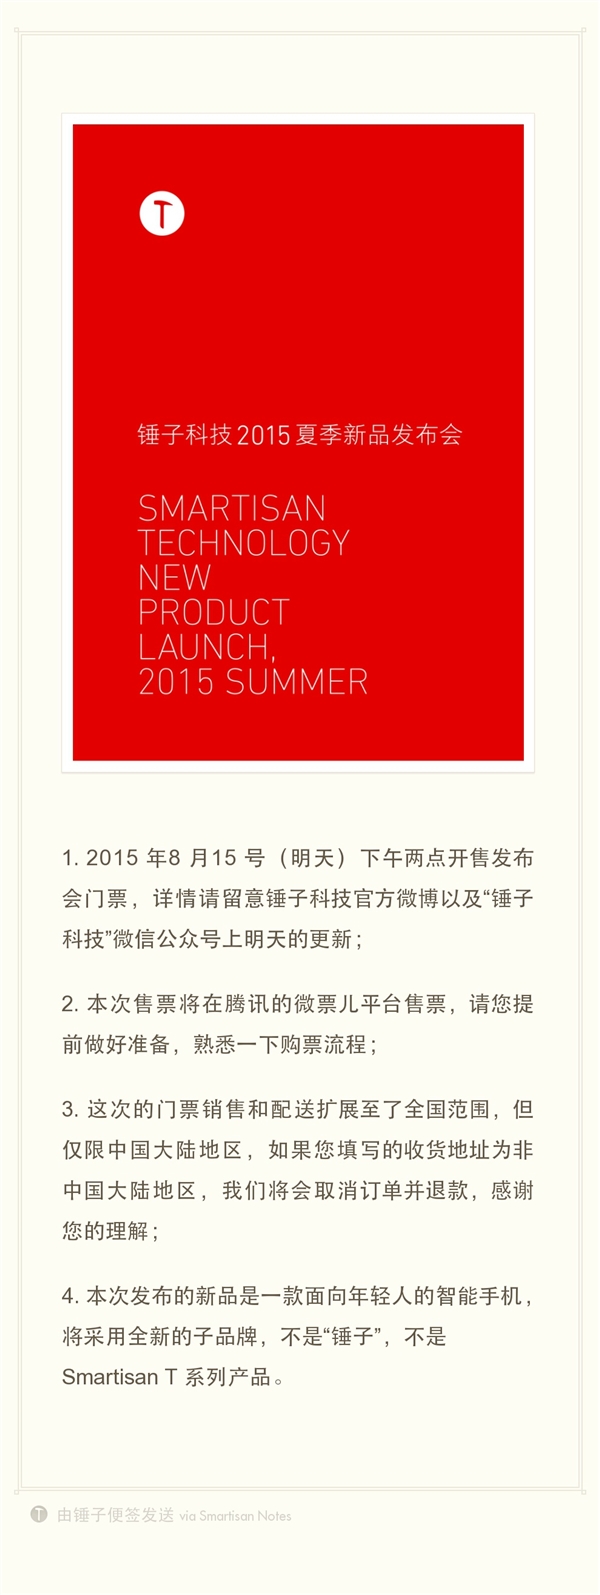 锤子科技将于8月25日举行新品发布会 门票今天下午2点开售